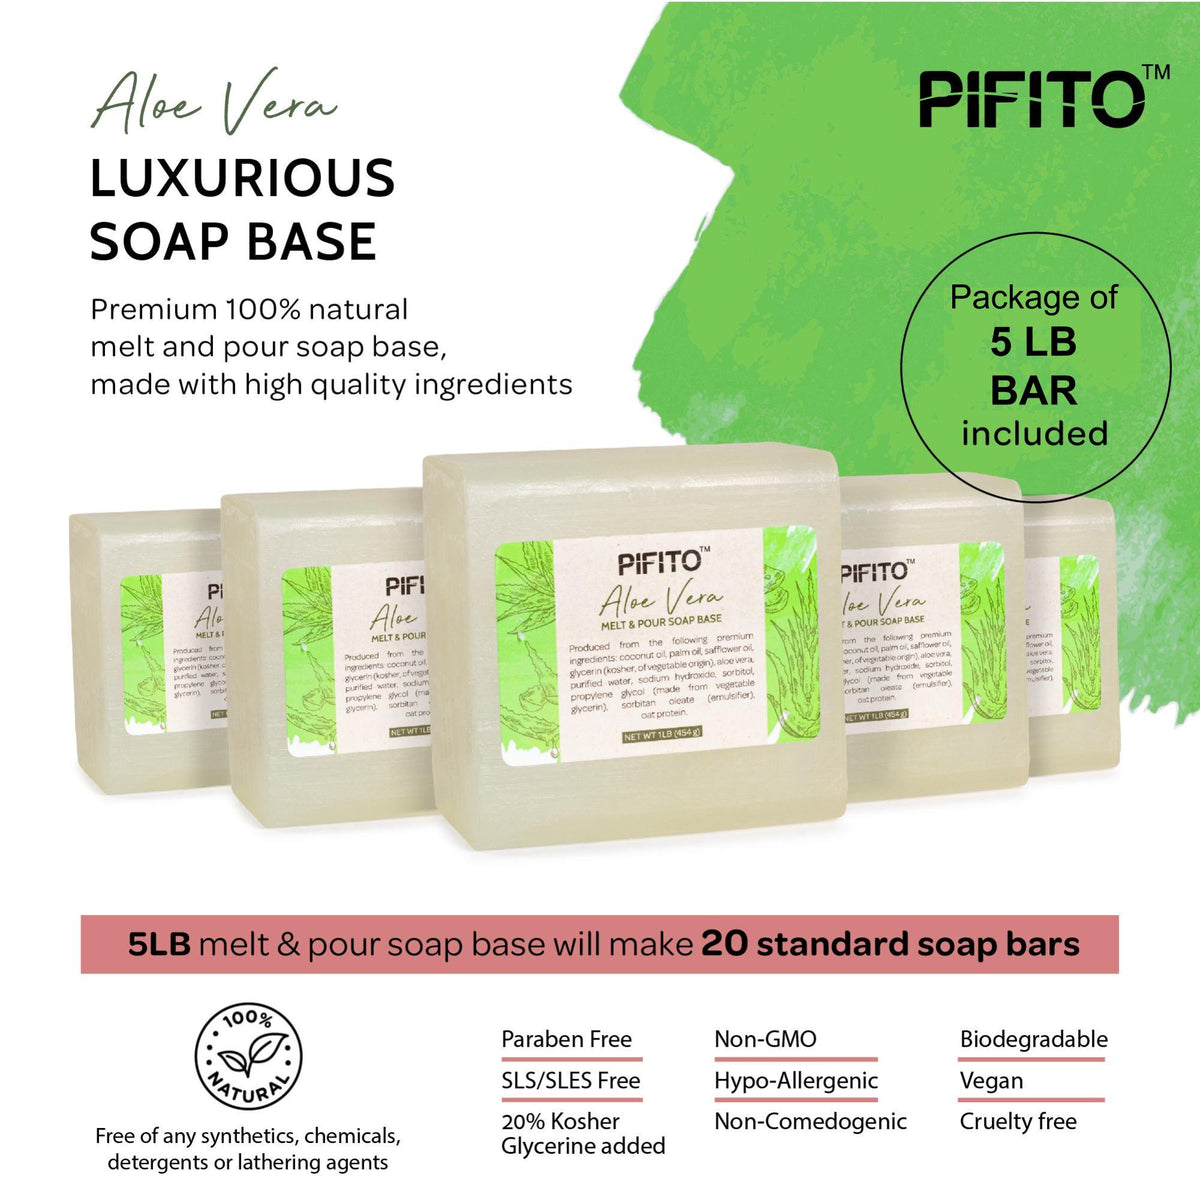 Natural Melt & Pour Soap Base